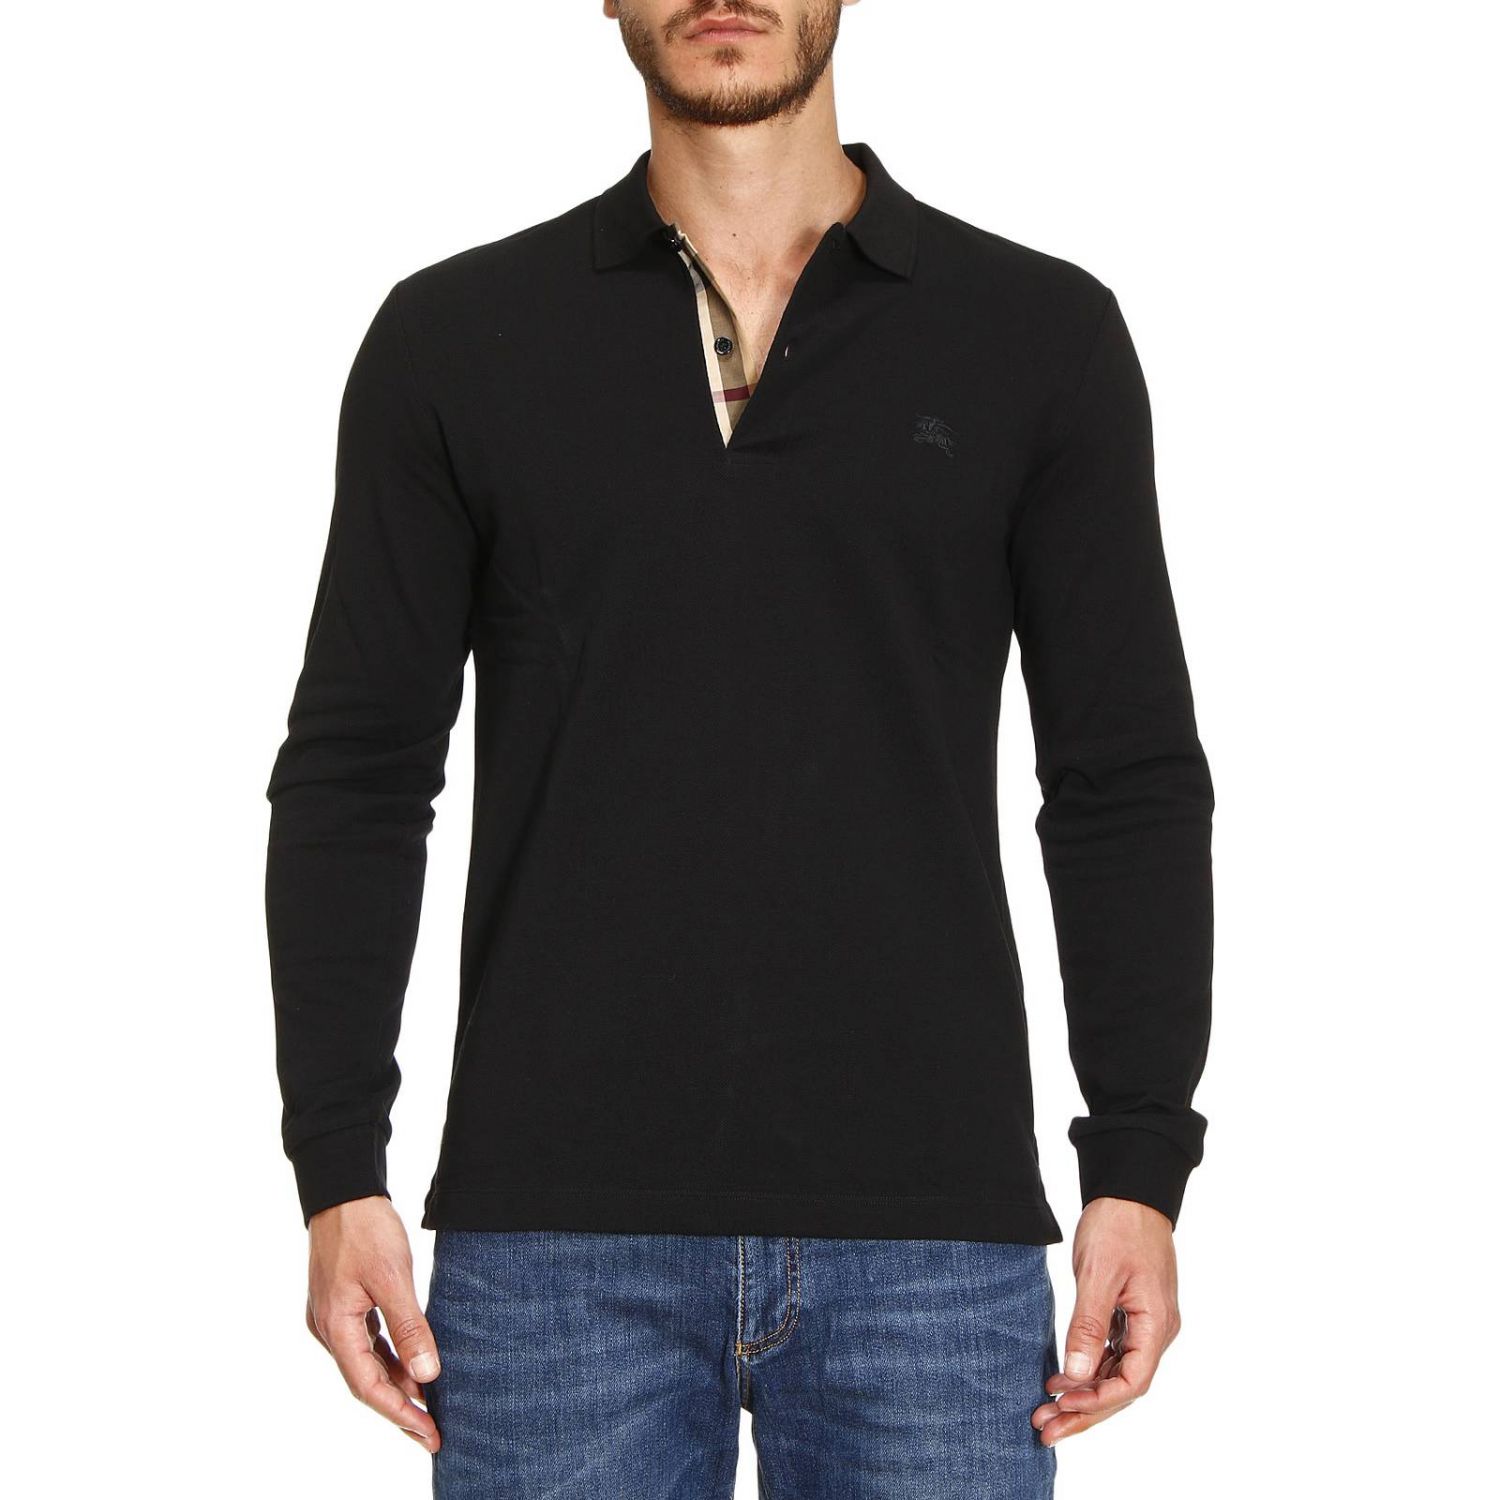 Burberry Outlet: T-shirt men | T-Shirt Burberry Men Black | T-Shirt ...